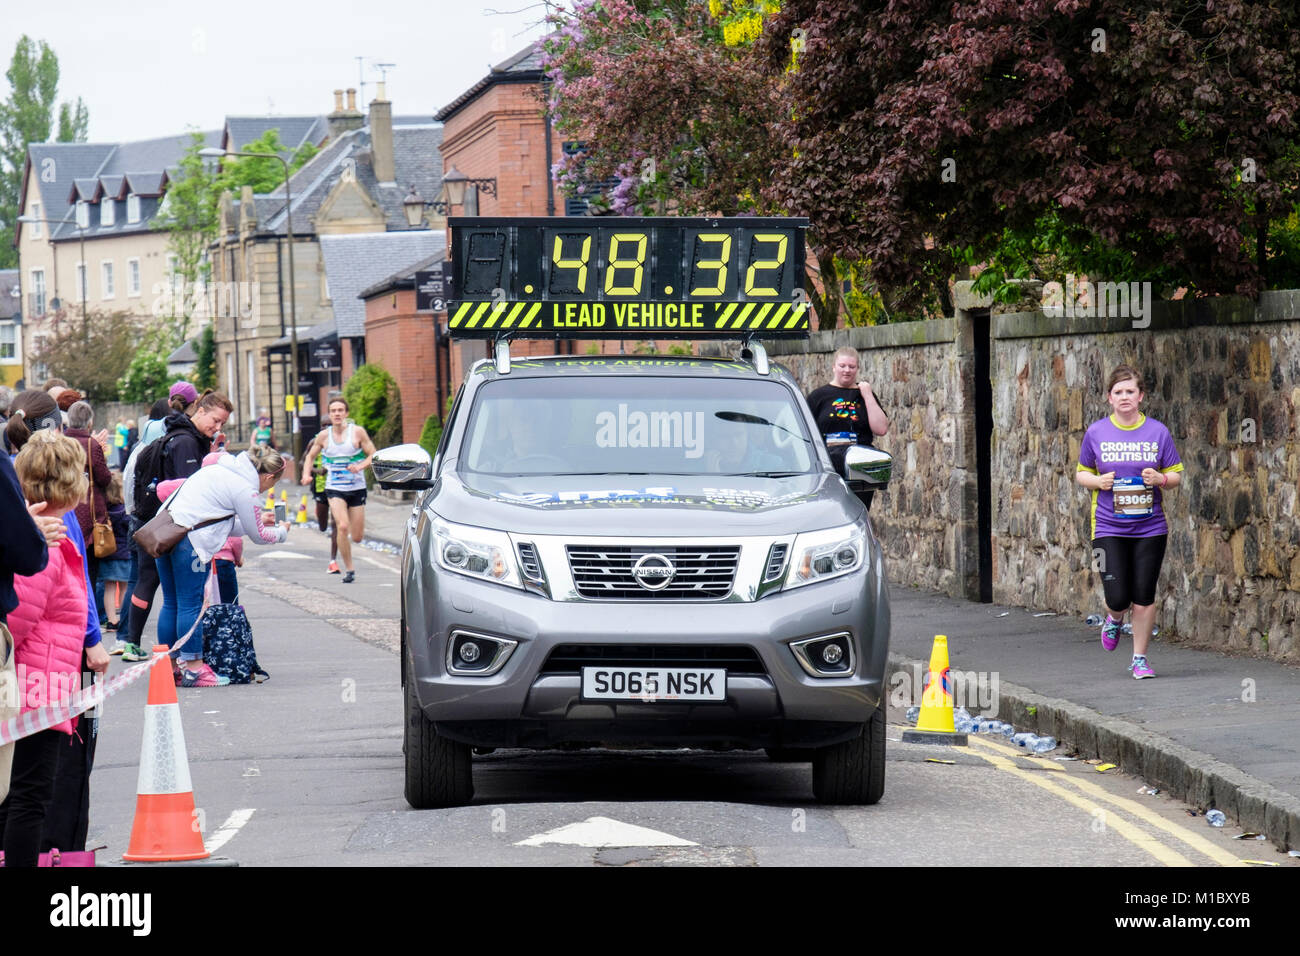 Véhicule de tête dans l'Edinburgh marathon 2016 avec les spectateurs sur la route. Linkfield Road, Musselburgh, Édimbourg, Écosse, Royaume-Uni, Angleterre Banque D'Images